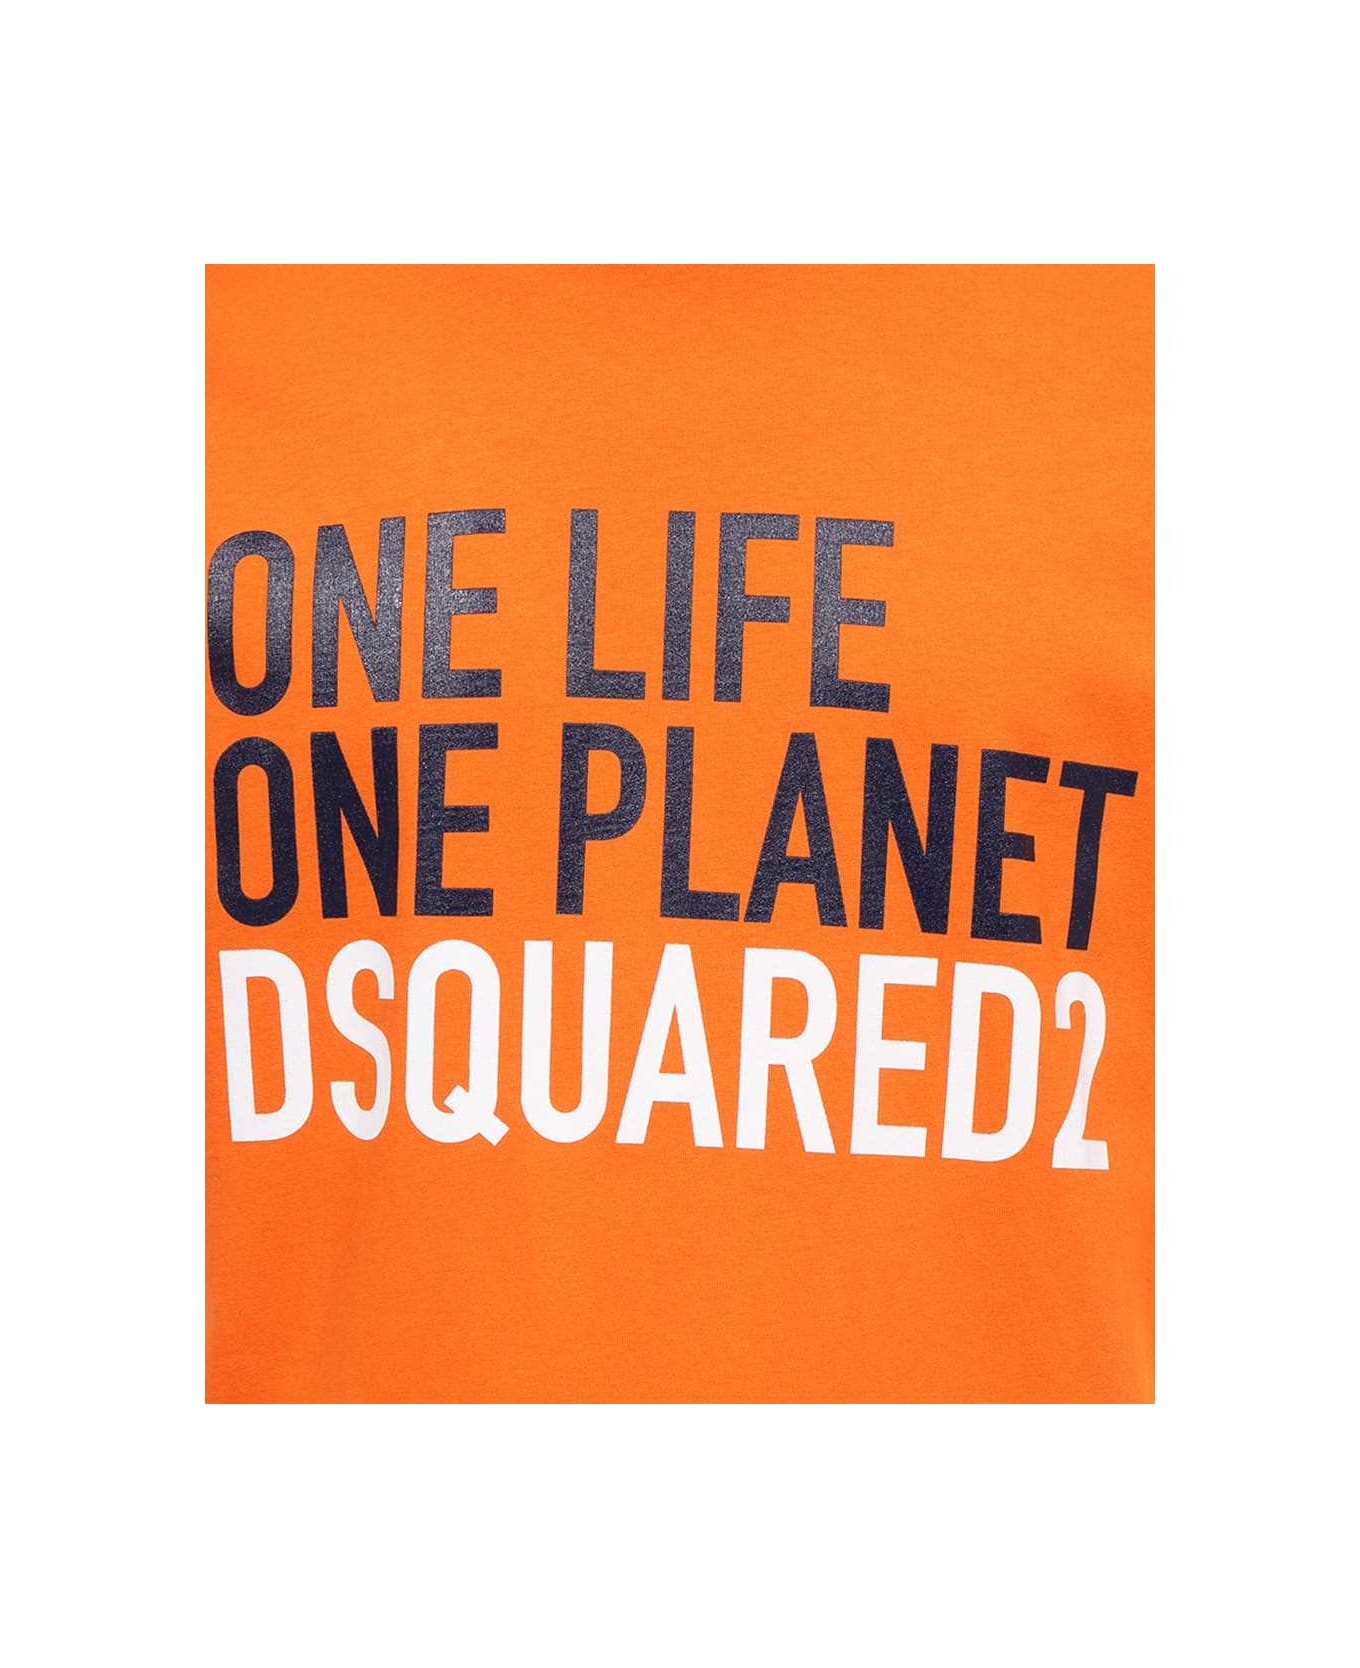 Dsquared2 Crew-neck T-shirt - Orange